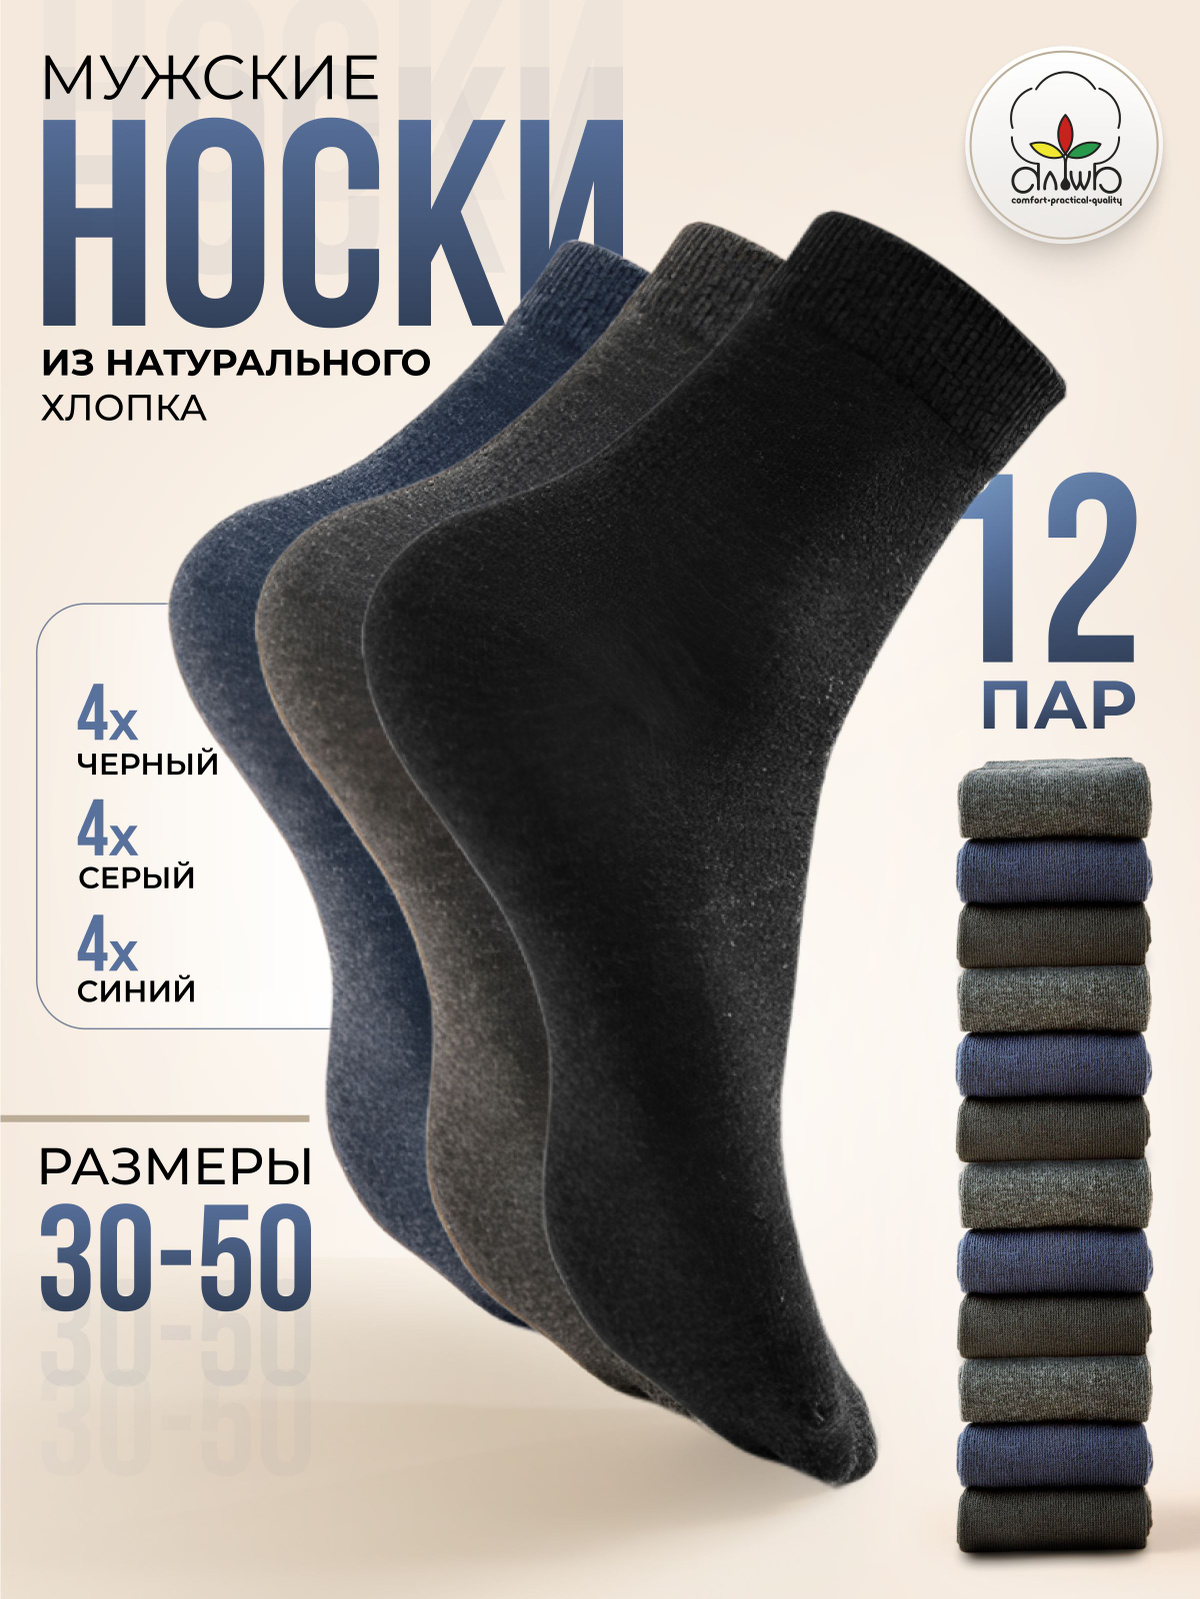 Мужские носки три цвета предлагают три разных цвета, что позволяет комбинировать их с различными стилями одежды и создавать интересные образы.   Носки изготовлены из качественных материалов, которые обеспечивают комфорт и долговечность носки. Благодаря этому, вы можете наслаждаться комфортом и свежестью каждый день.   Мужские носки три цвета от бренда "АЛЬША" станут отличным дополнением к вашему гардеробу и помогут создать стильные образы.